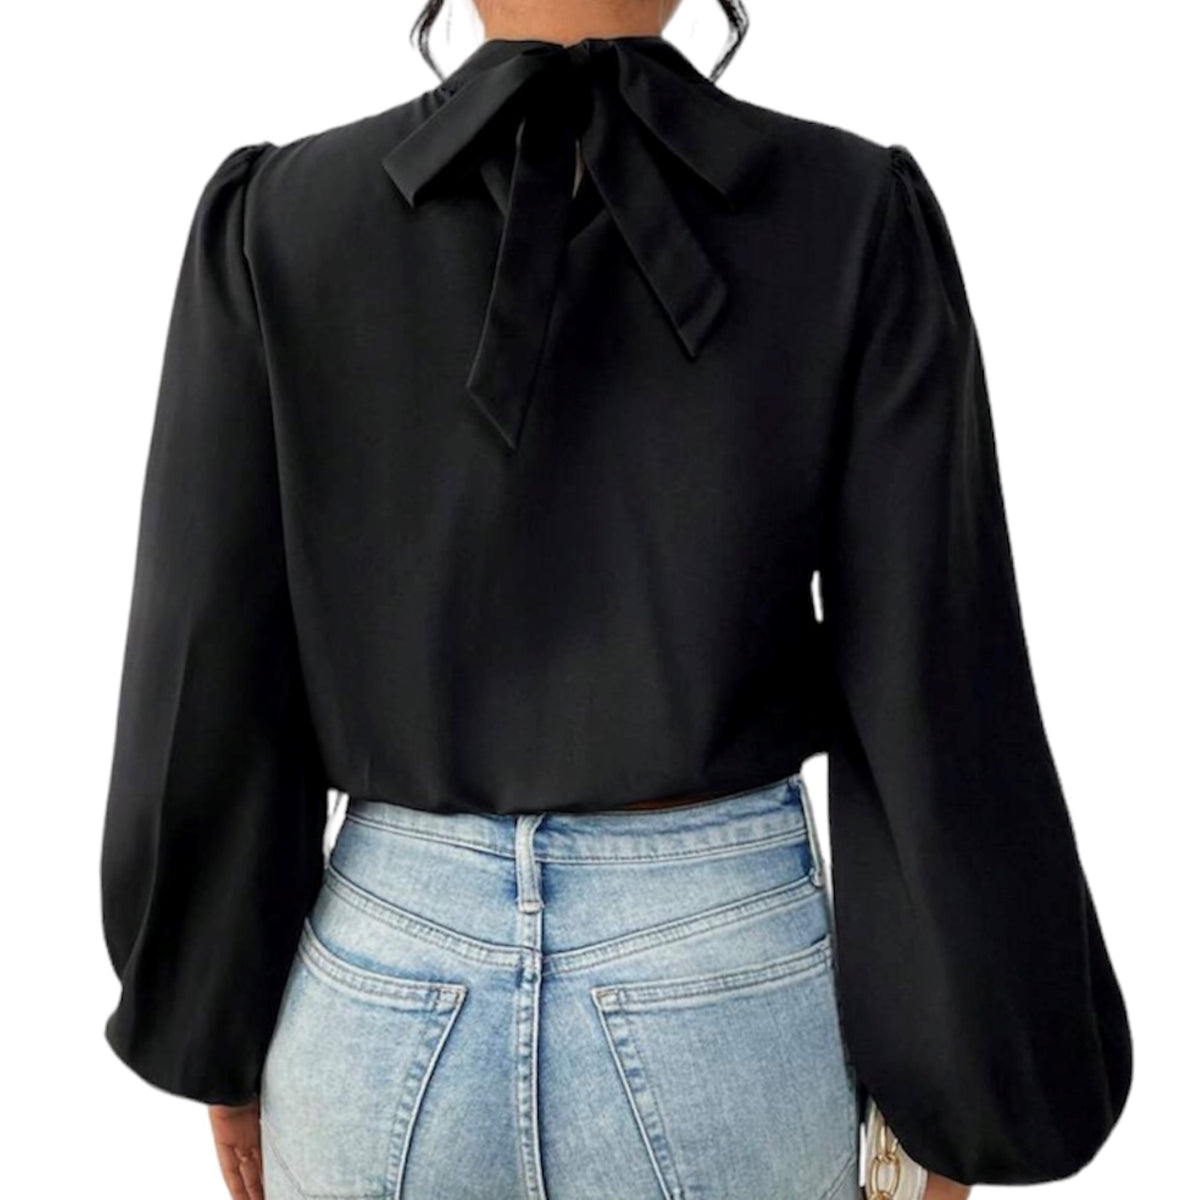 Profitez d'un look élégant avec cette blouse noire courte à manches longues. Sa coupe ajustée permet une silhouette chic et féminine. Une touche finale facile à porter, adaptée à tous les styles pour une occasion spéciale ou une journée au bureau.